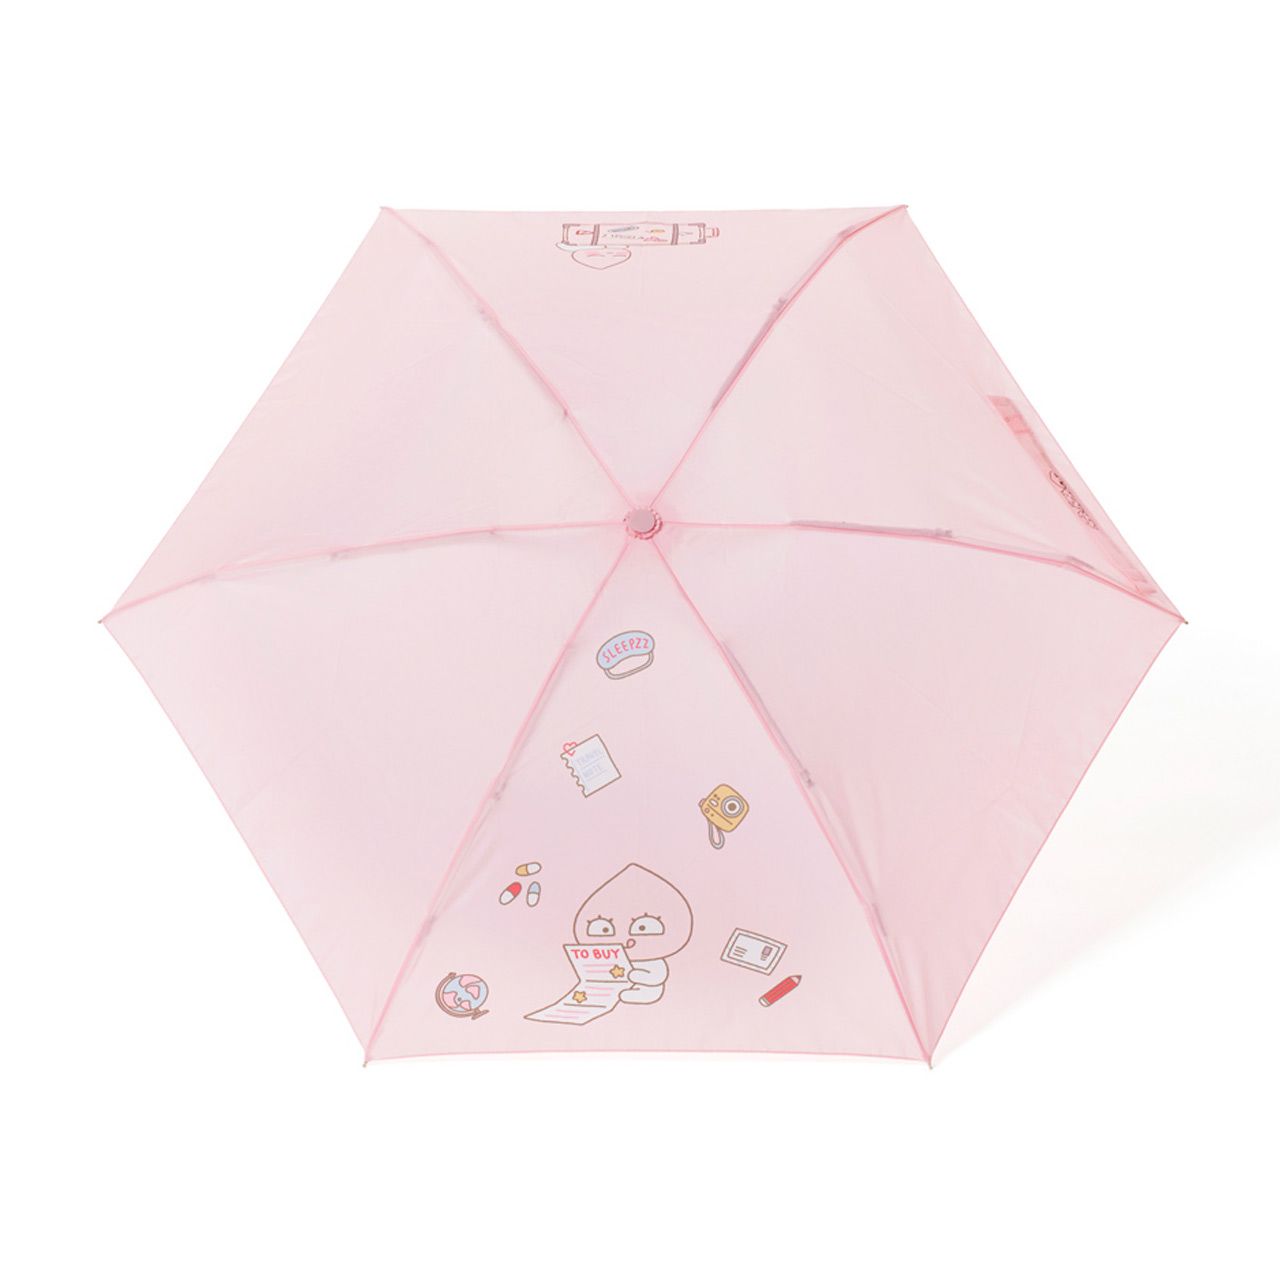 [KAKAO FRIENDS] 桃子 雨傘 折疊傘 雨衣 韓國 韓國代購 屁桃 絕版 限量 偷偷摸摸🐢